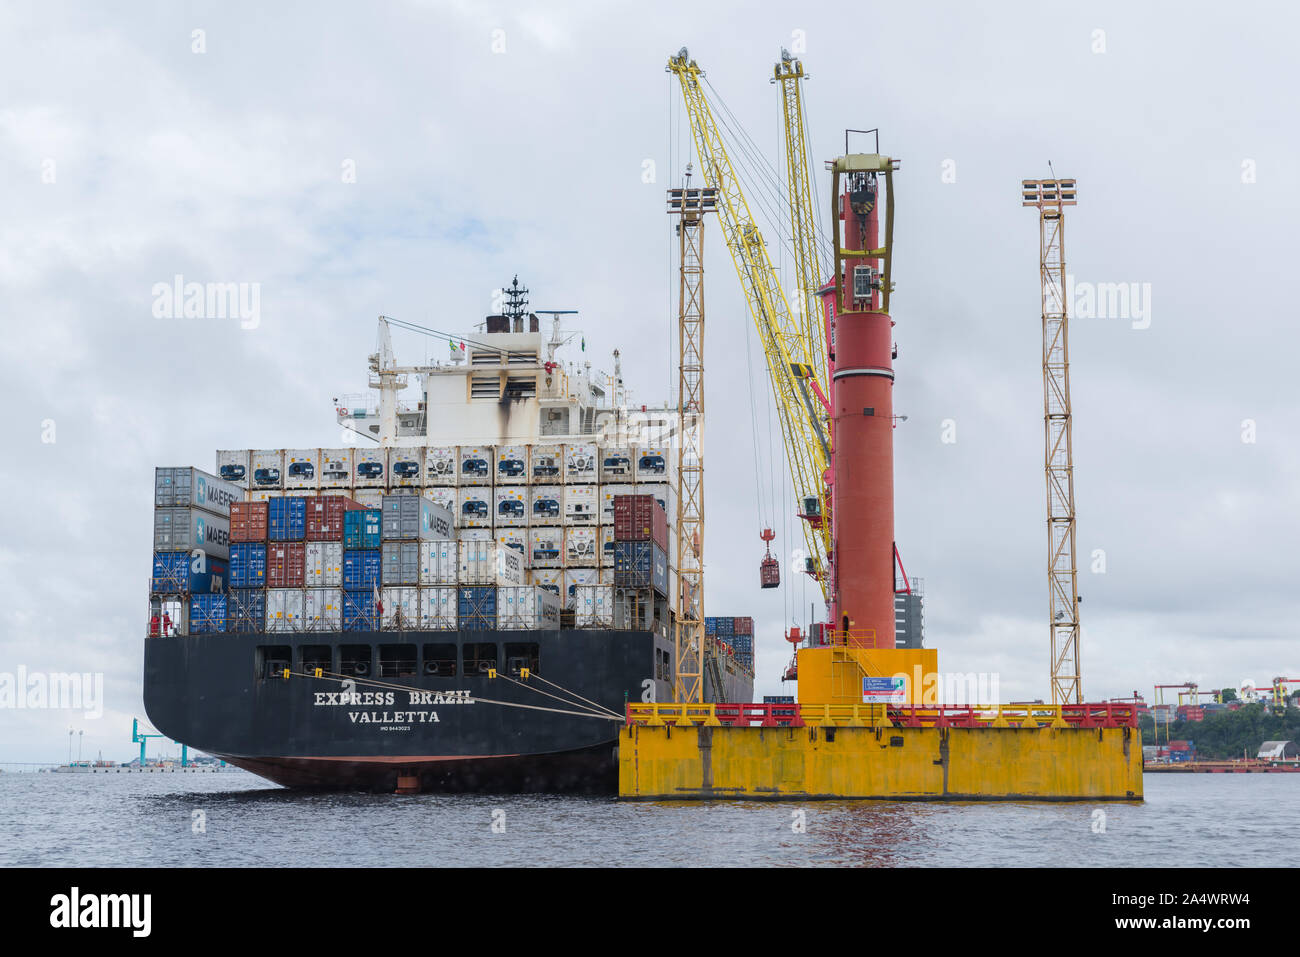 Container Ship ' Express Brésil" en cours de déchargement par grue, à un quai Manaus, l'Amazone, Brésil, Amérique Latine Banque D'Images